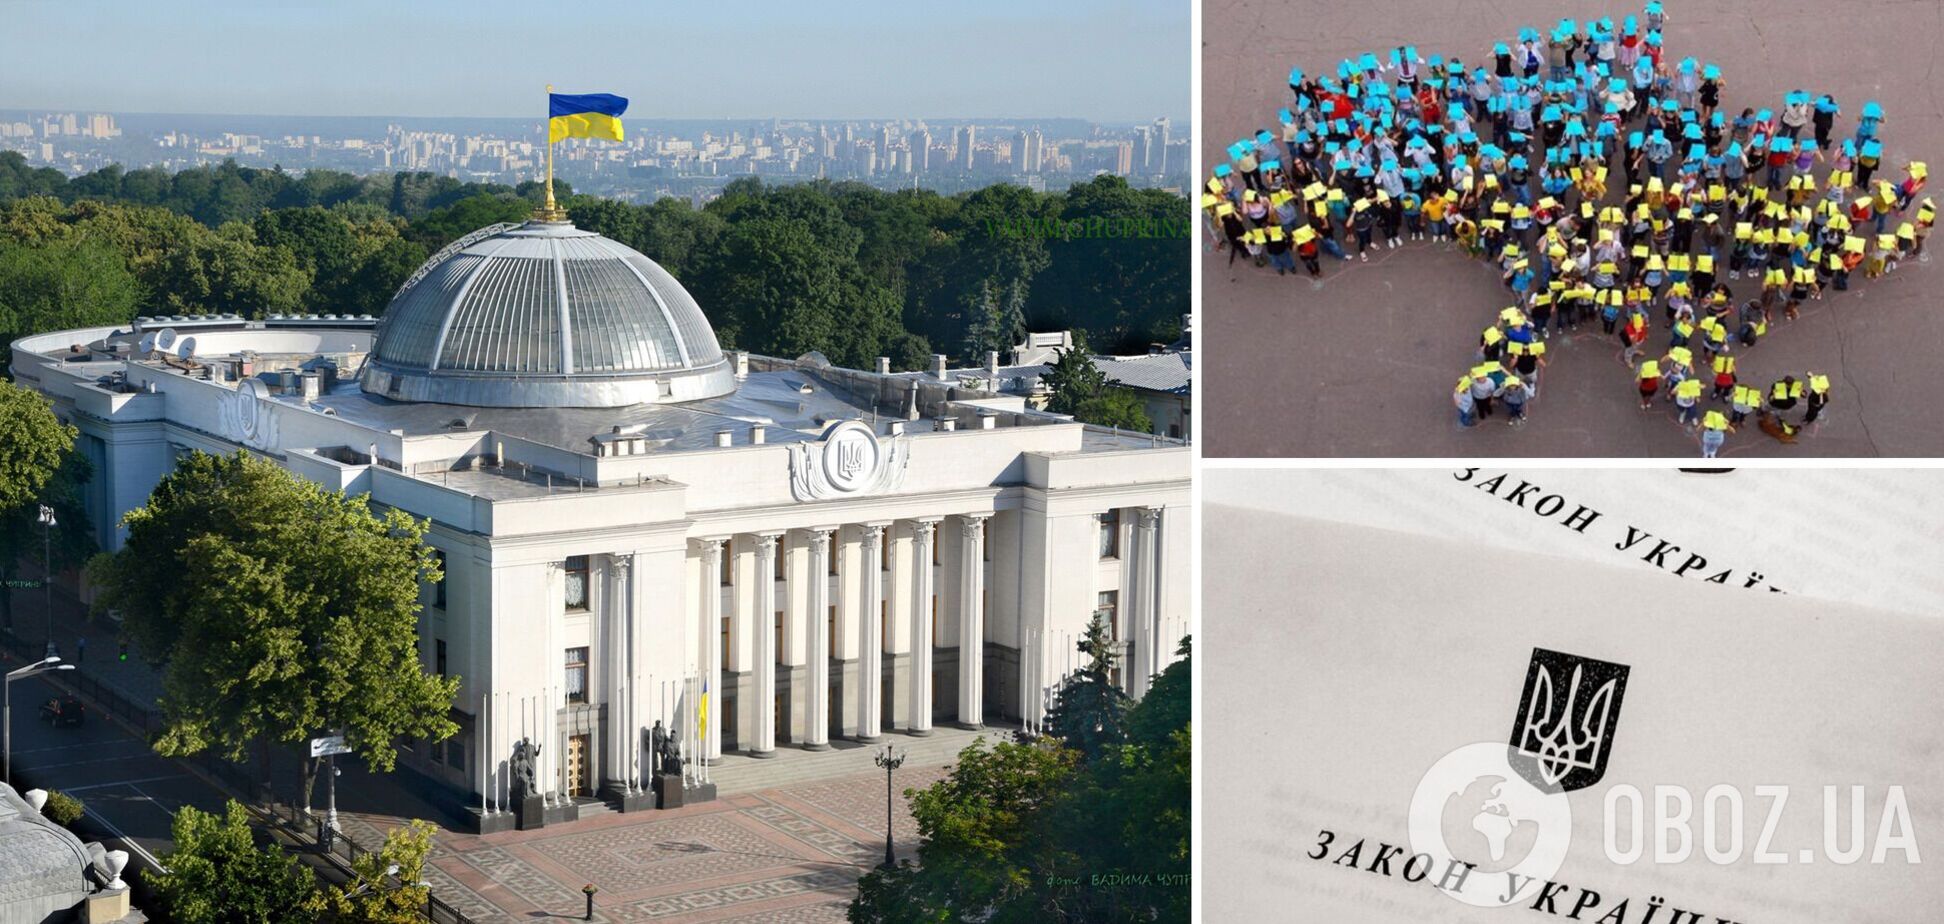 'Евроинтеграционное решение': депутаты Рады поддержали закон о нацменьшинствах. Что предполагает